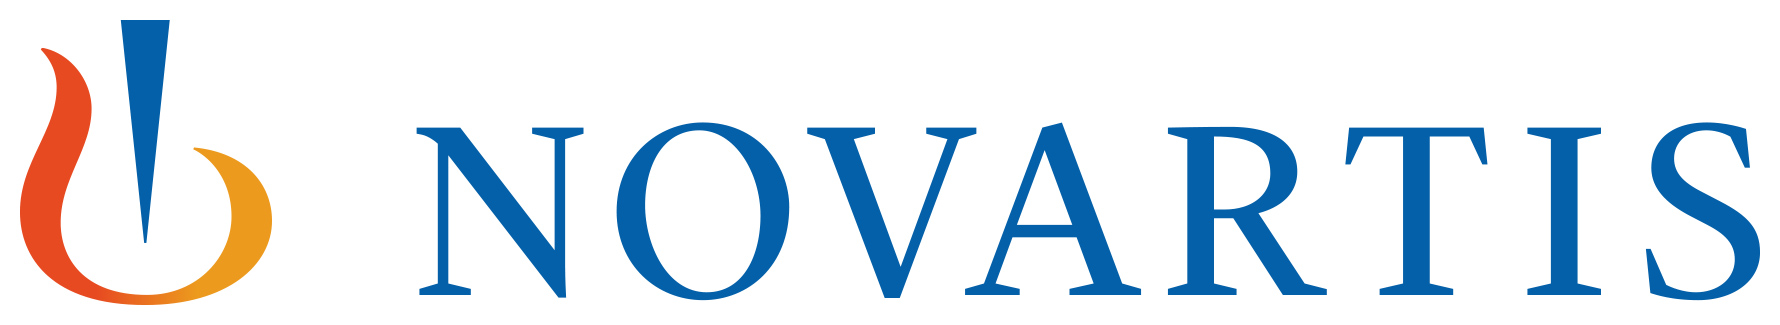 Novartis logo rgb jpg.jpg